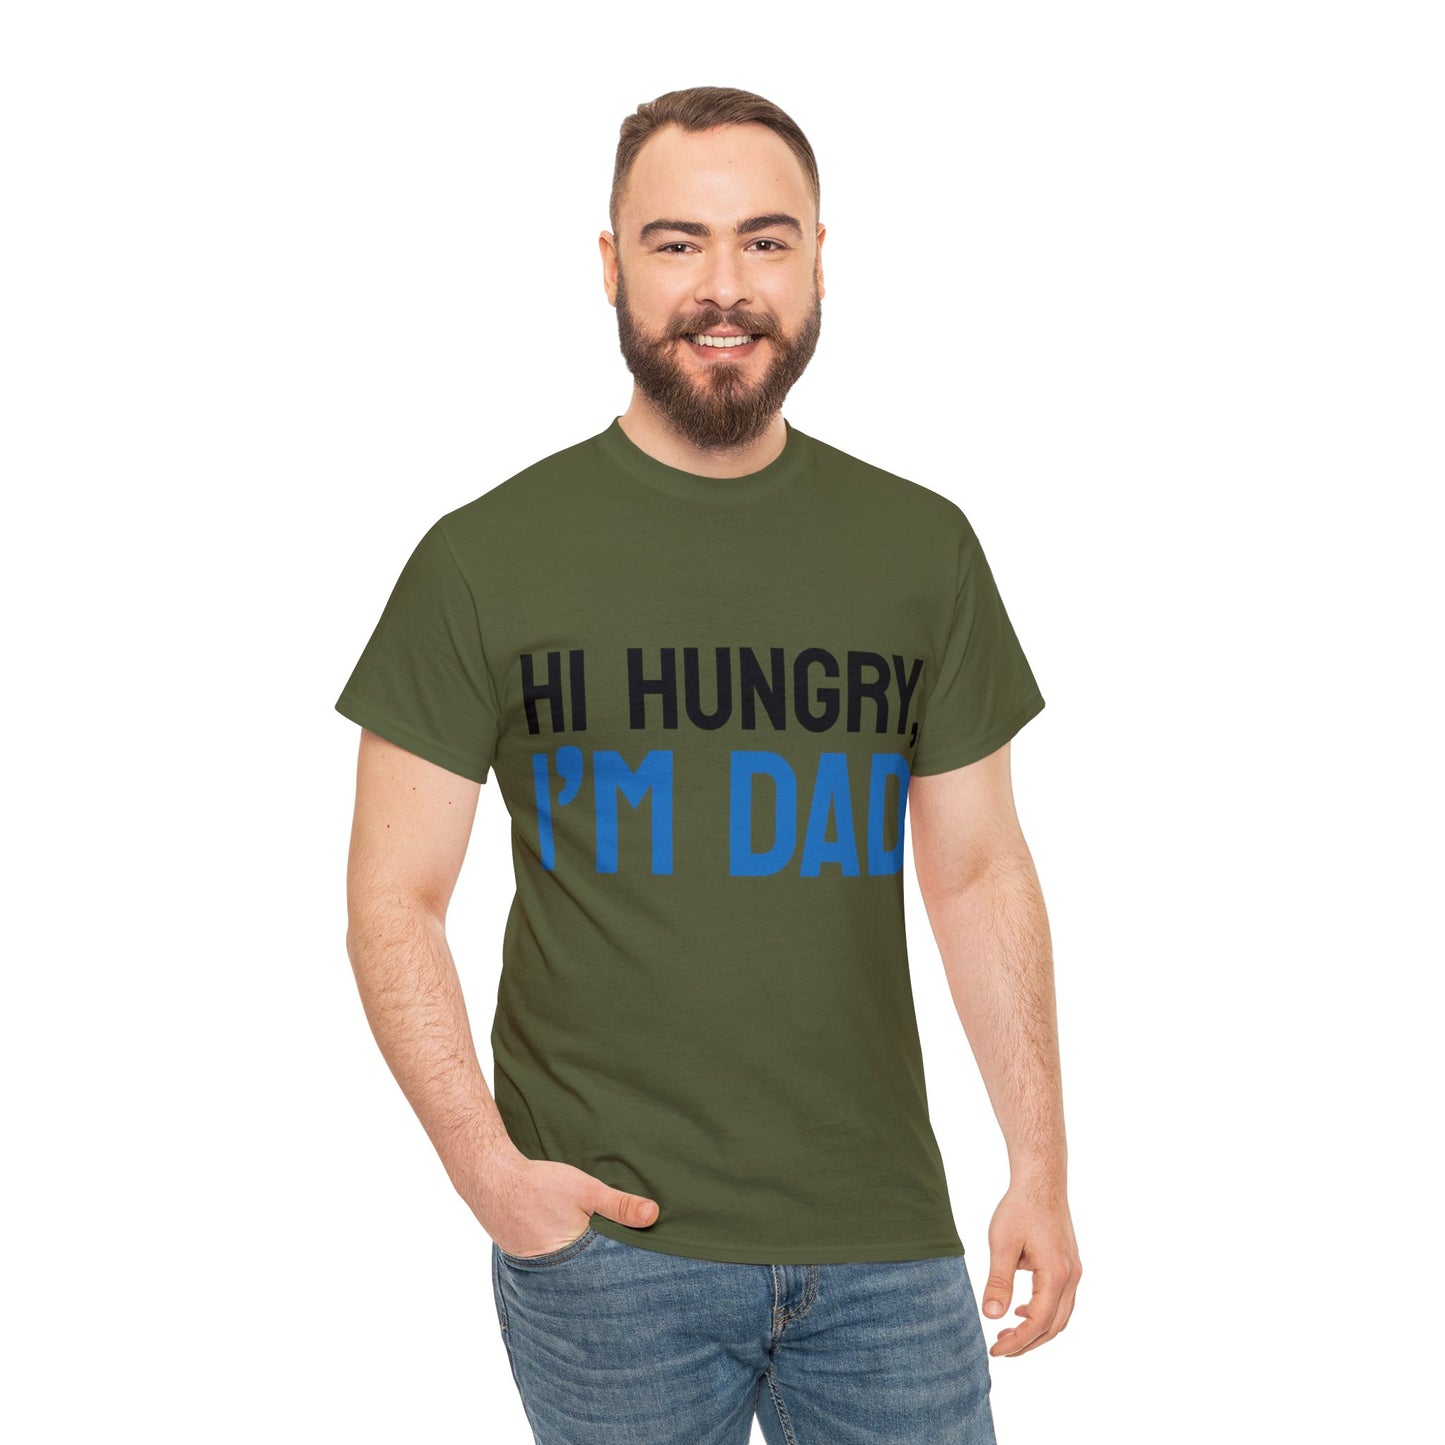 Hi Hungry, I'm Dad